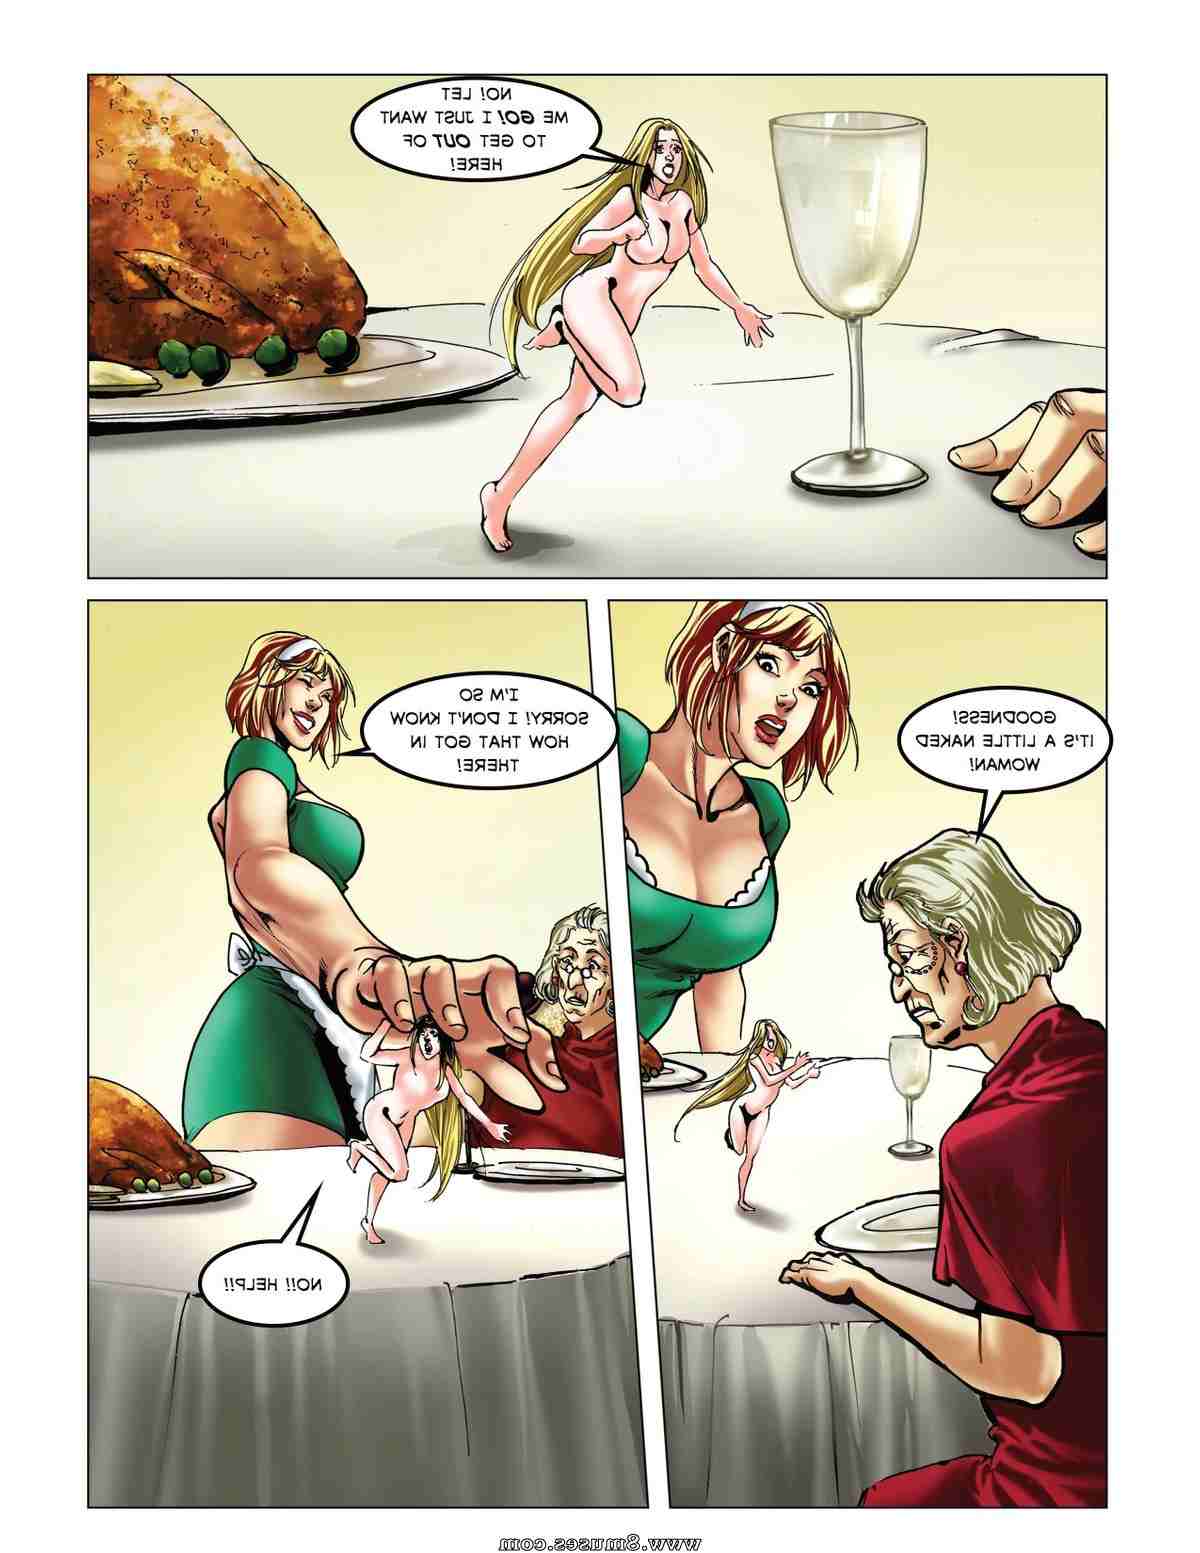 DreamTales-Comics/Mega-Marilyn-and-The-Incredible-Shrinking-Suzy Mega_Marilyn_and_The_Incredible_Shrinking_Suzy__8muses_-_Sex_and_Porn_Comics_46.jpg